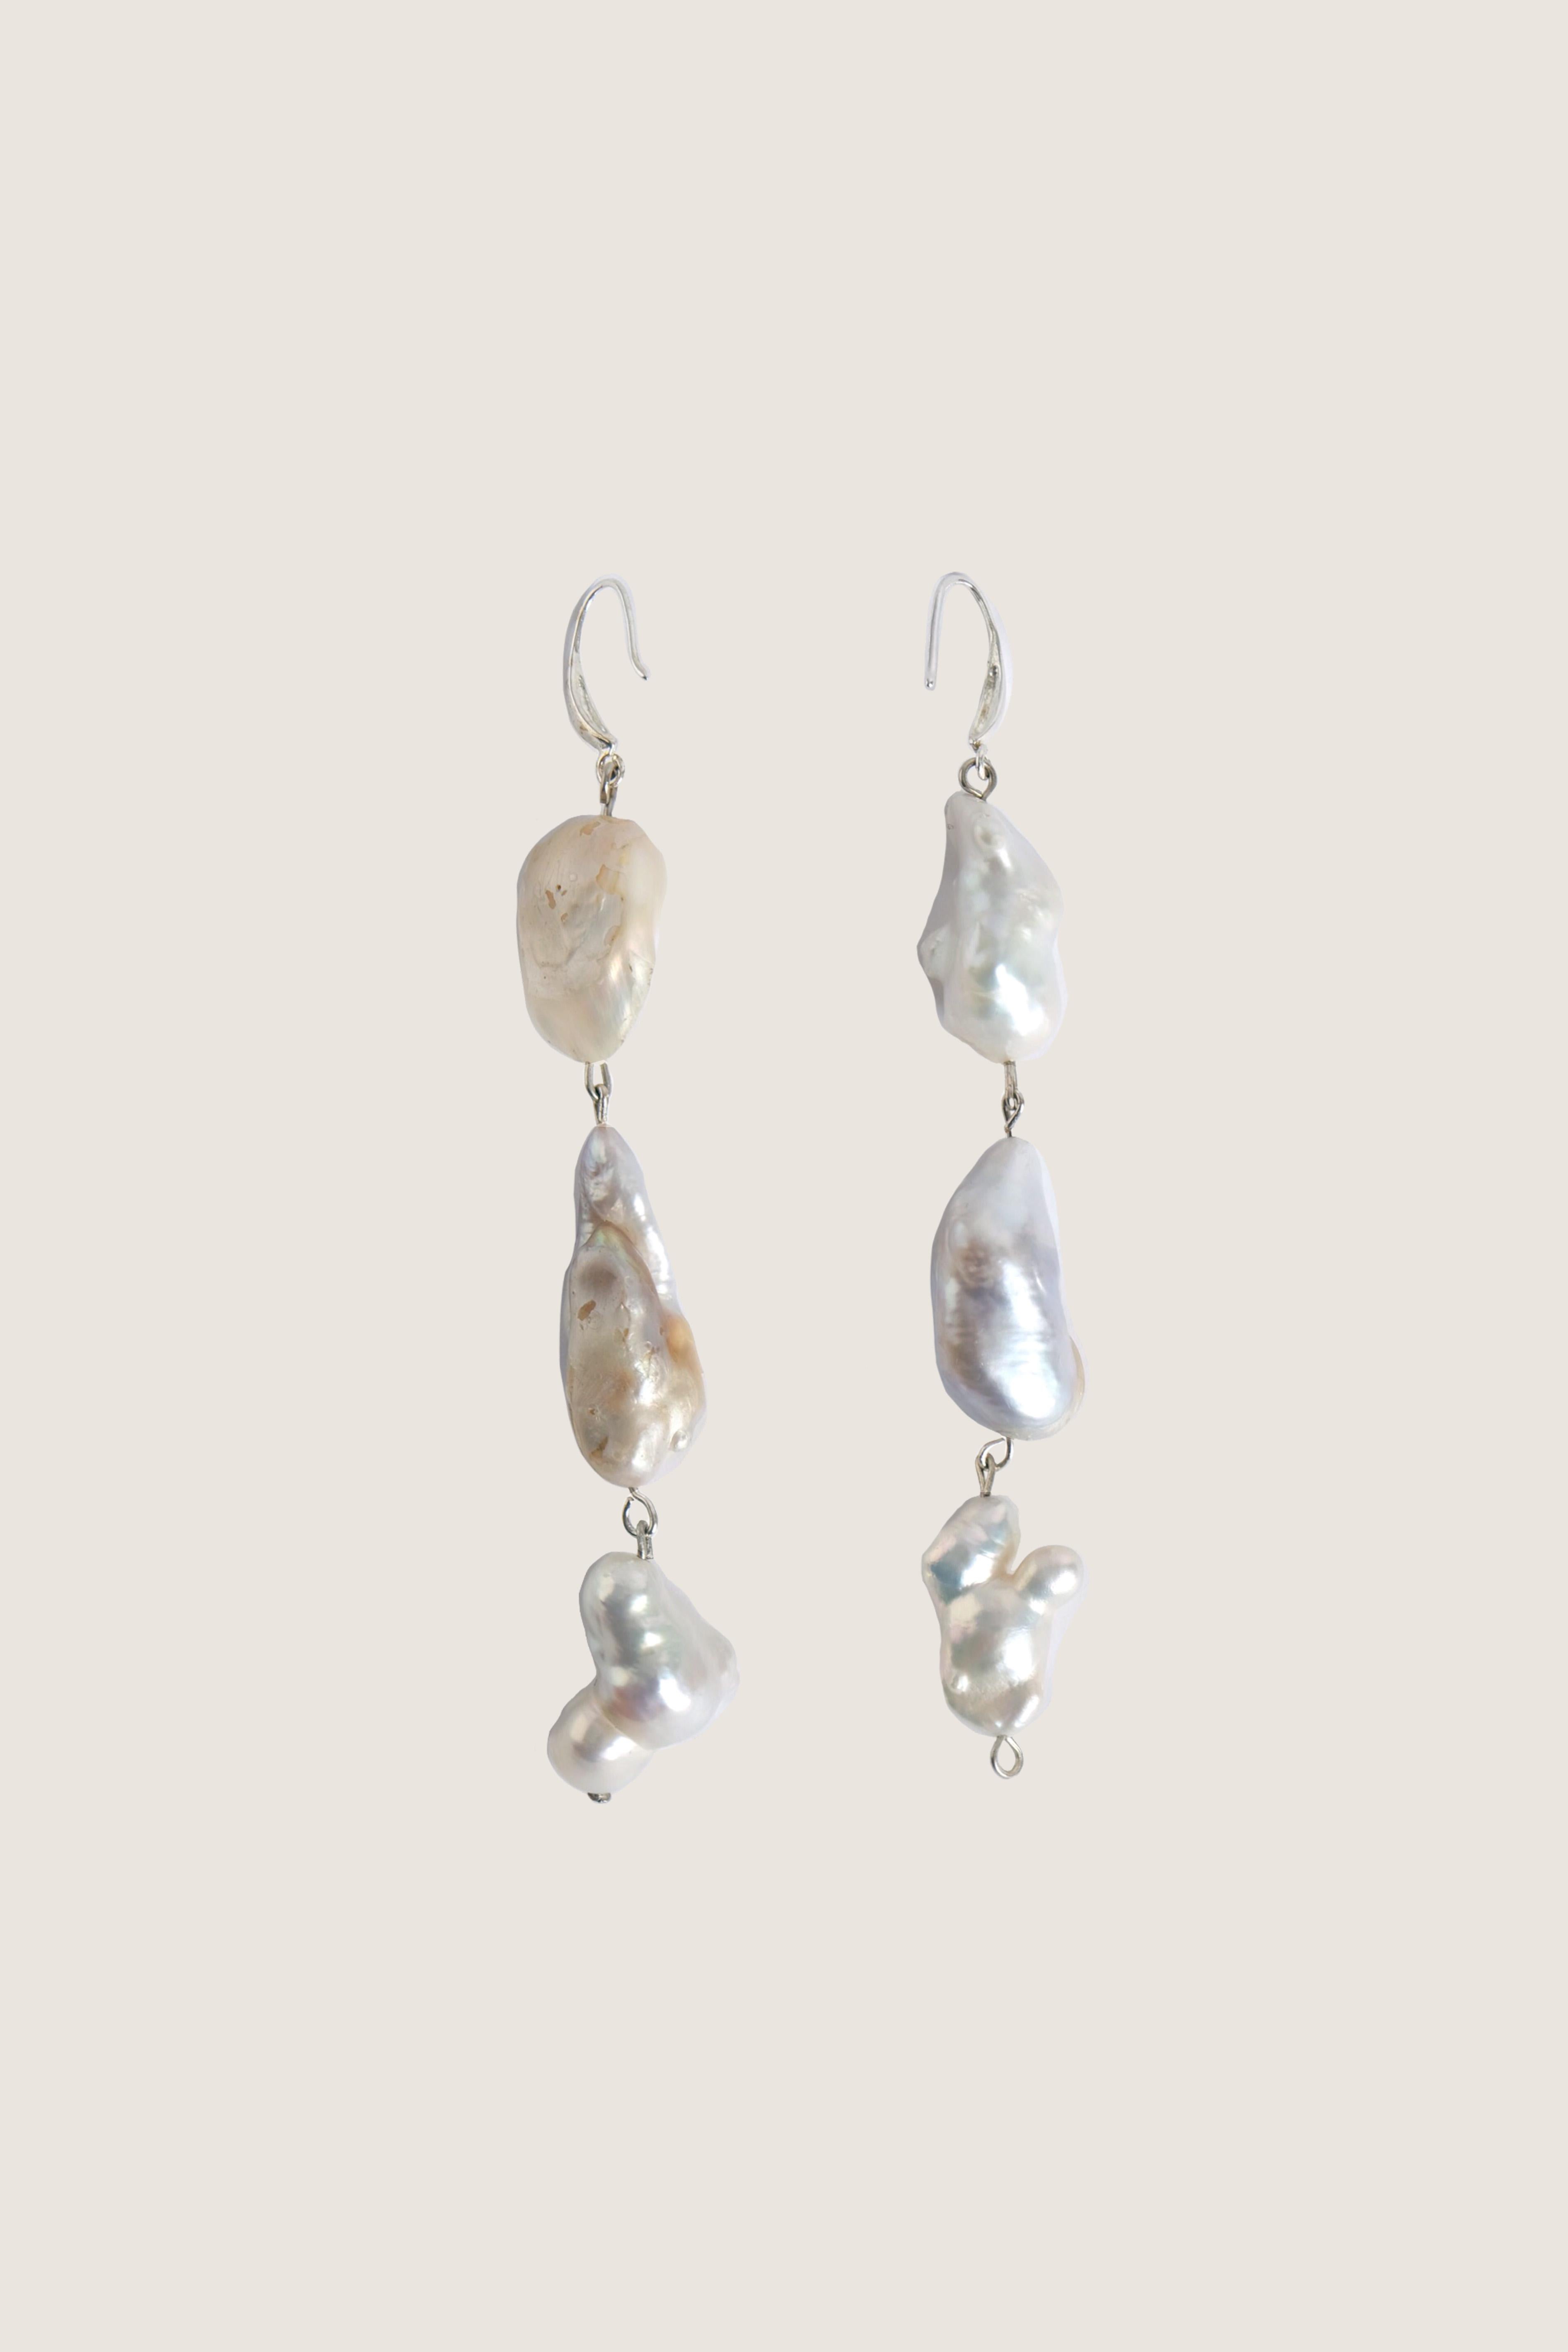 Uncut Notte Pearl Earring For Sale